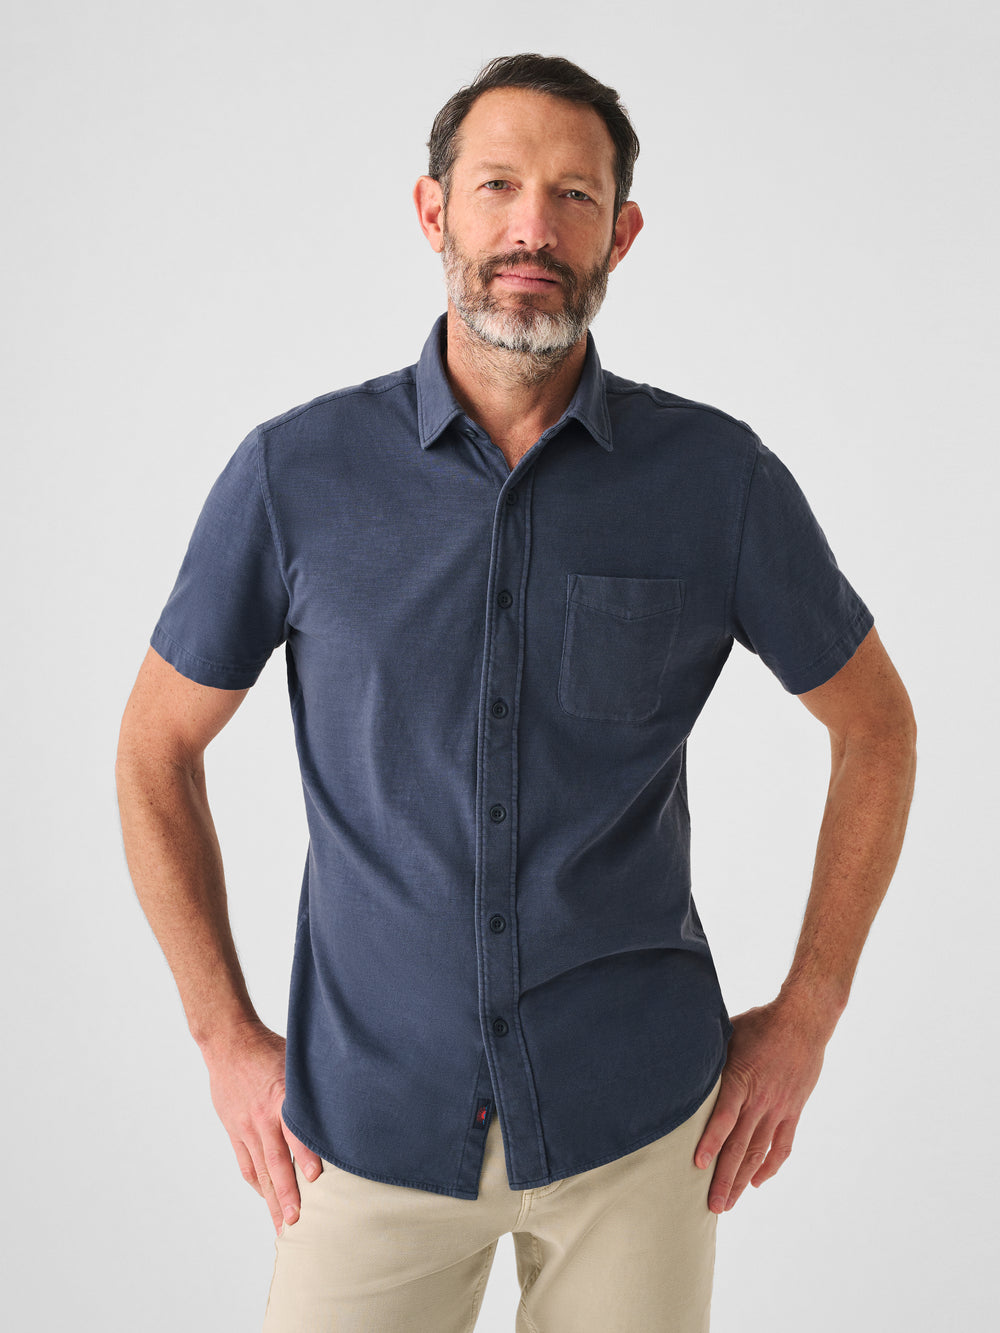 Short-Sleeve Knit Seasons Shirt